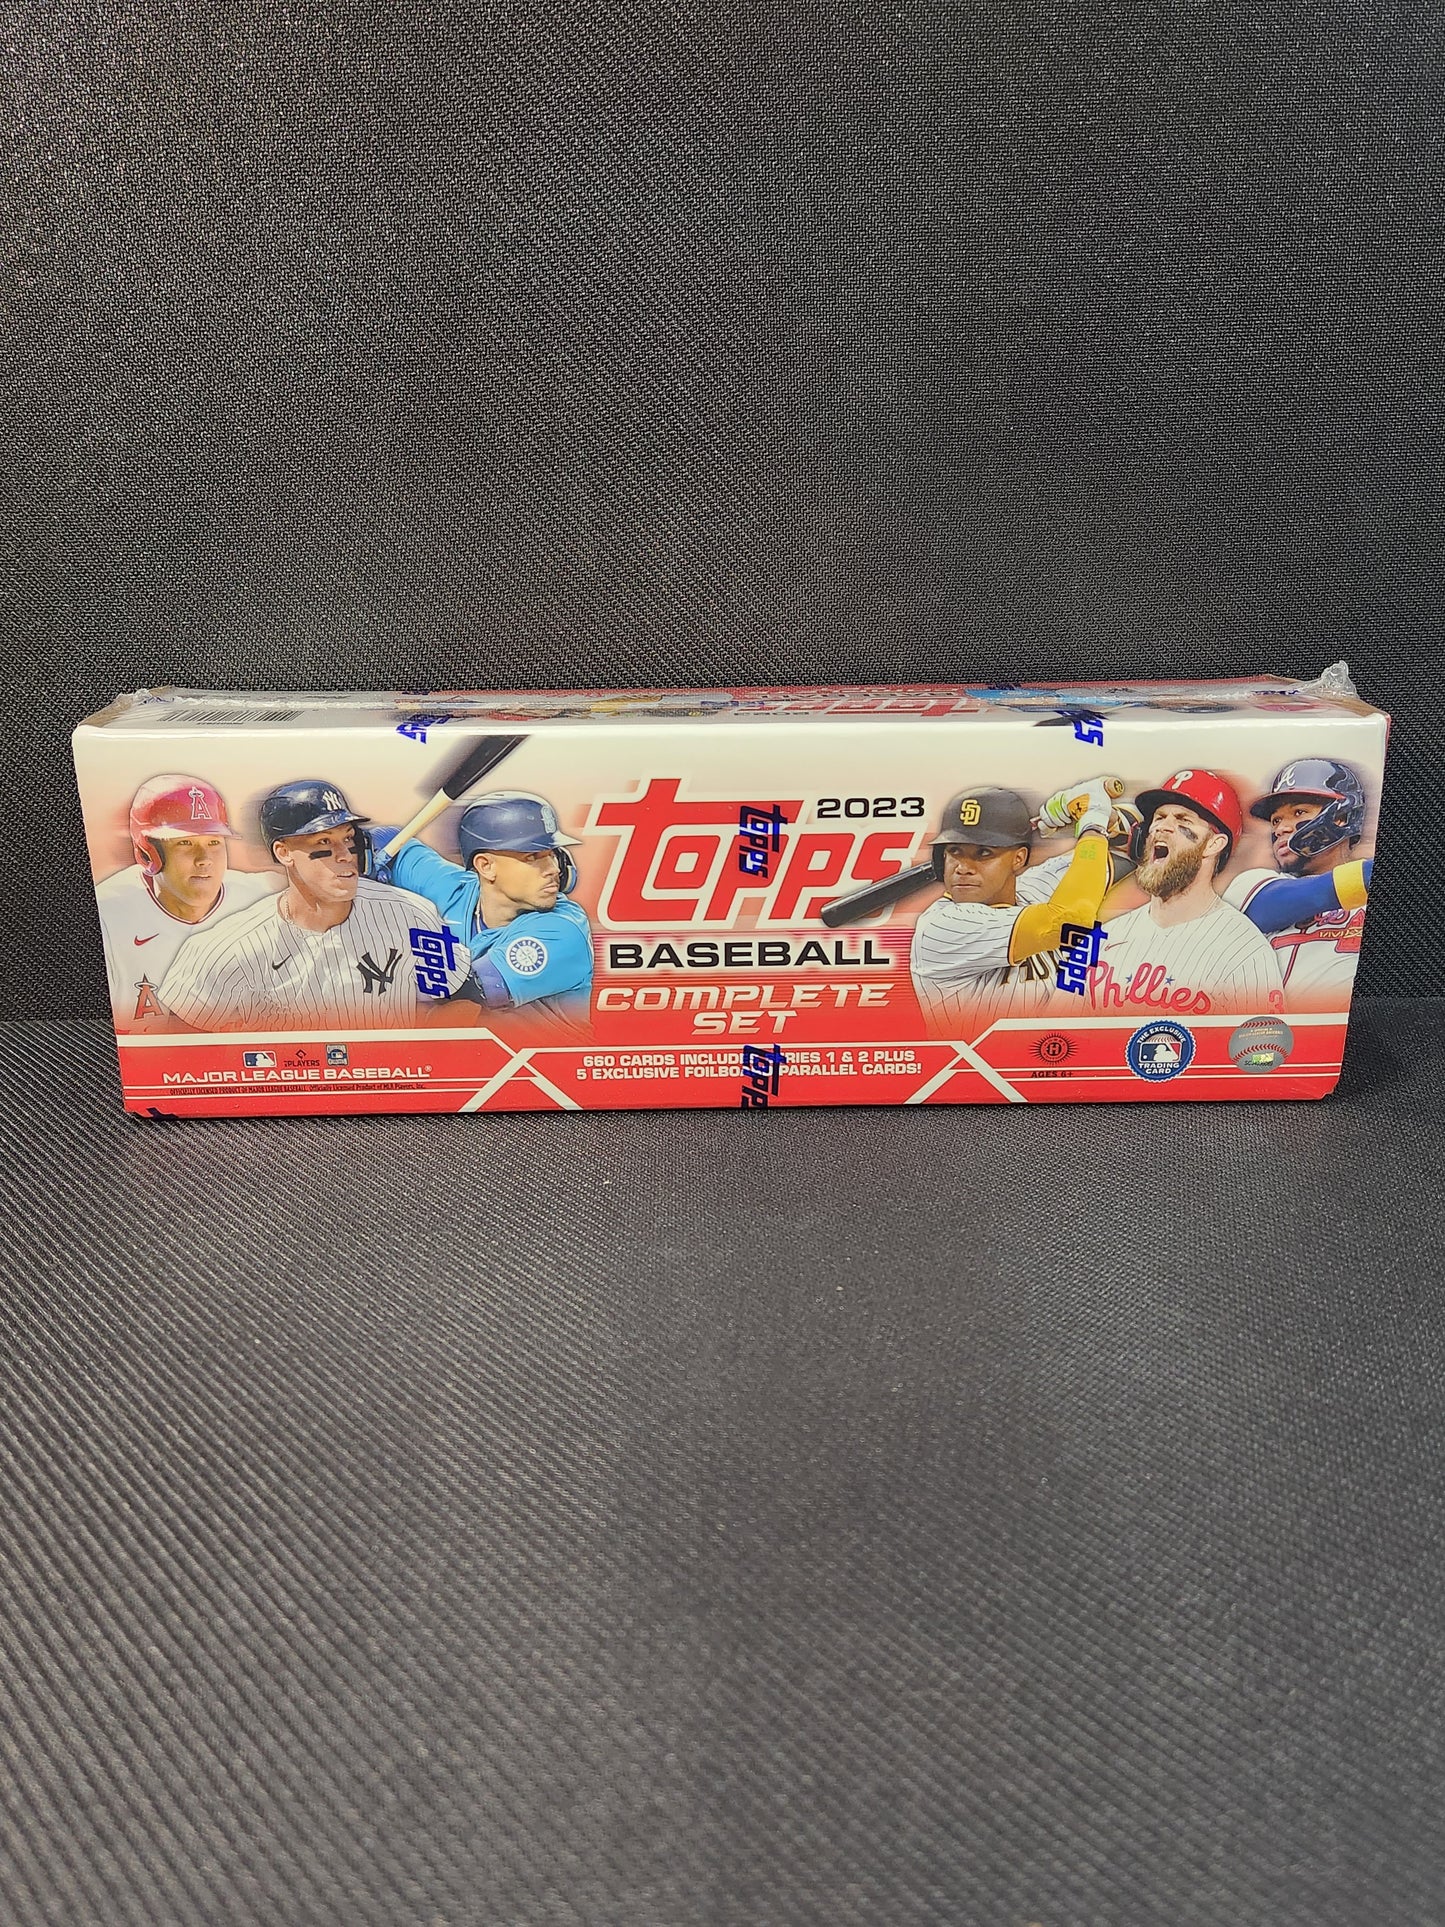 2023 Topps Baseball Complete Set, 12 Box Case